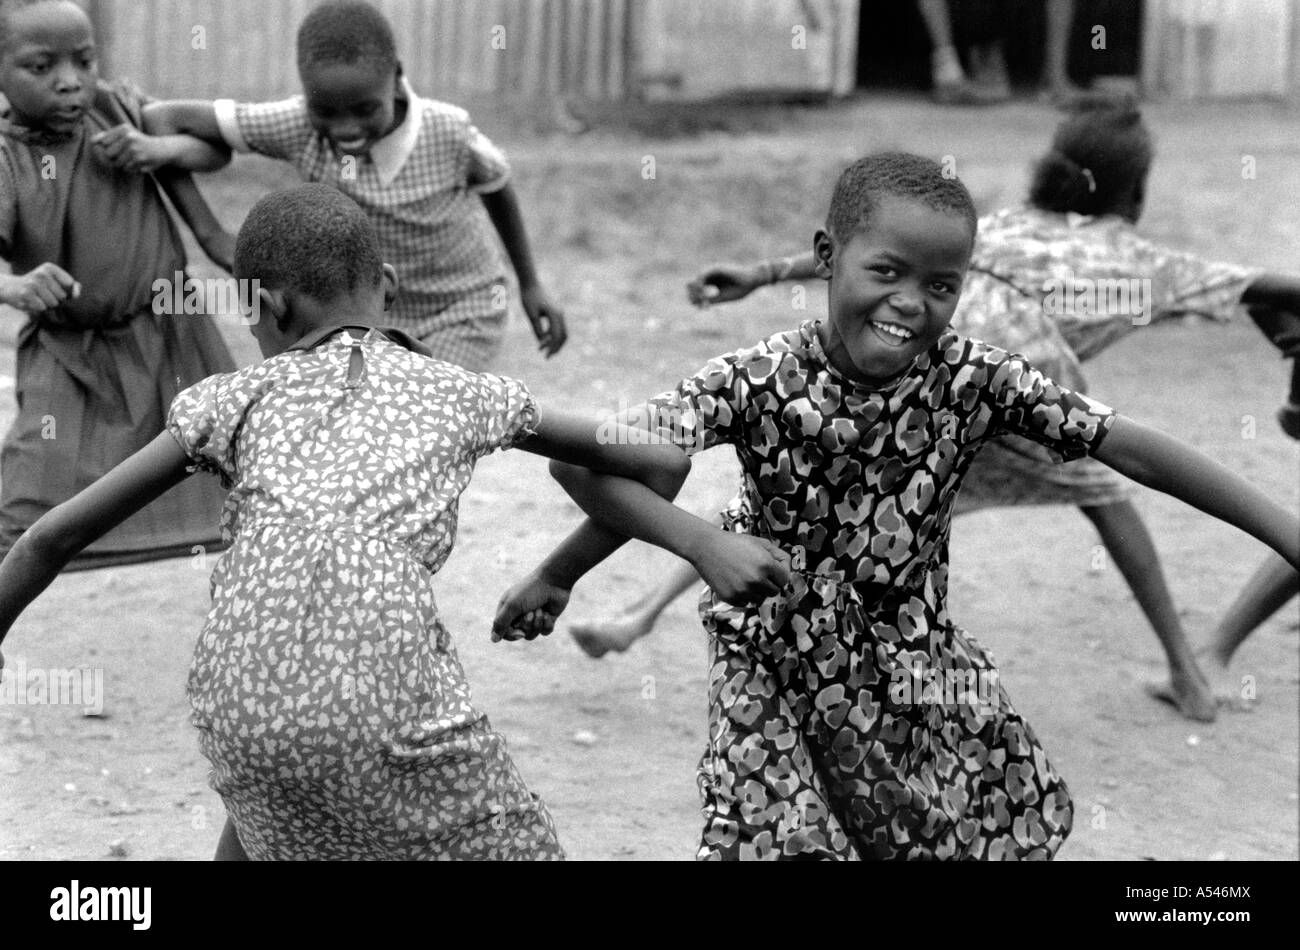 Painet HM1756 bianco e nero ragazze danza scuola i bambini giocando Nairobi Kenya paese nazione in via di sviluppo meno economicamente Foto Stock